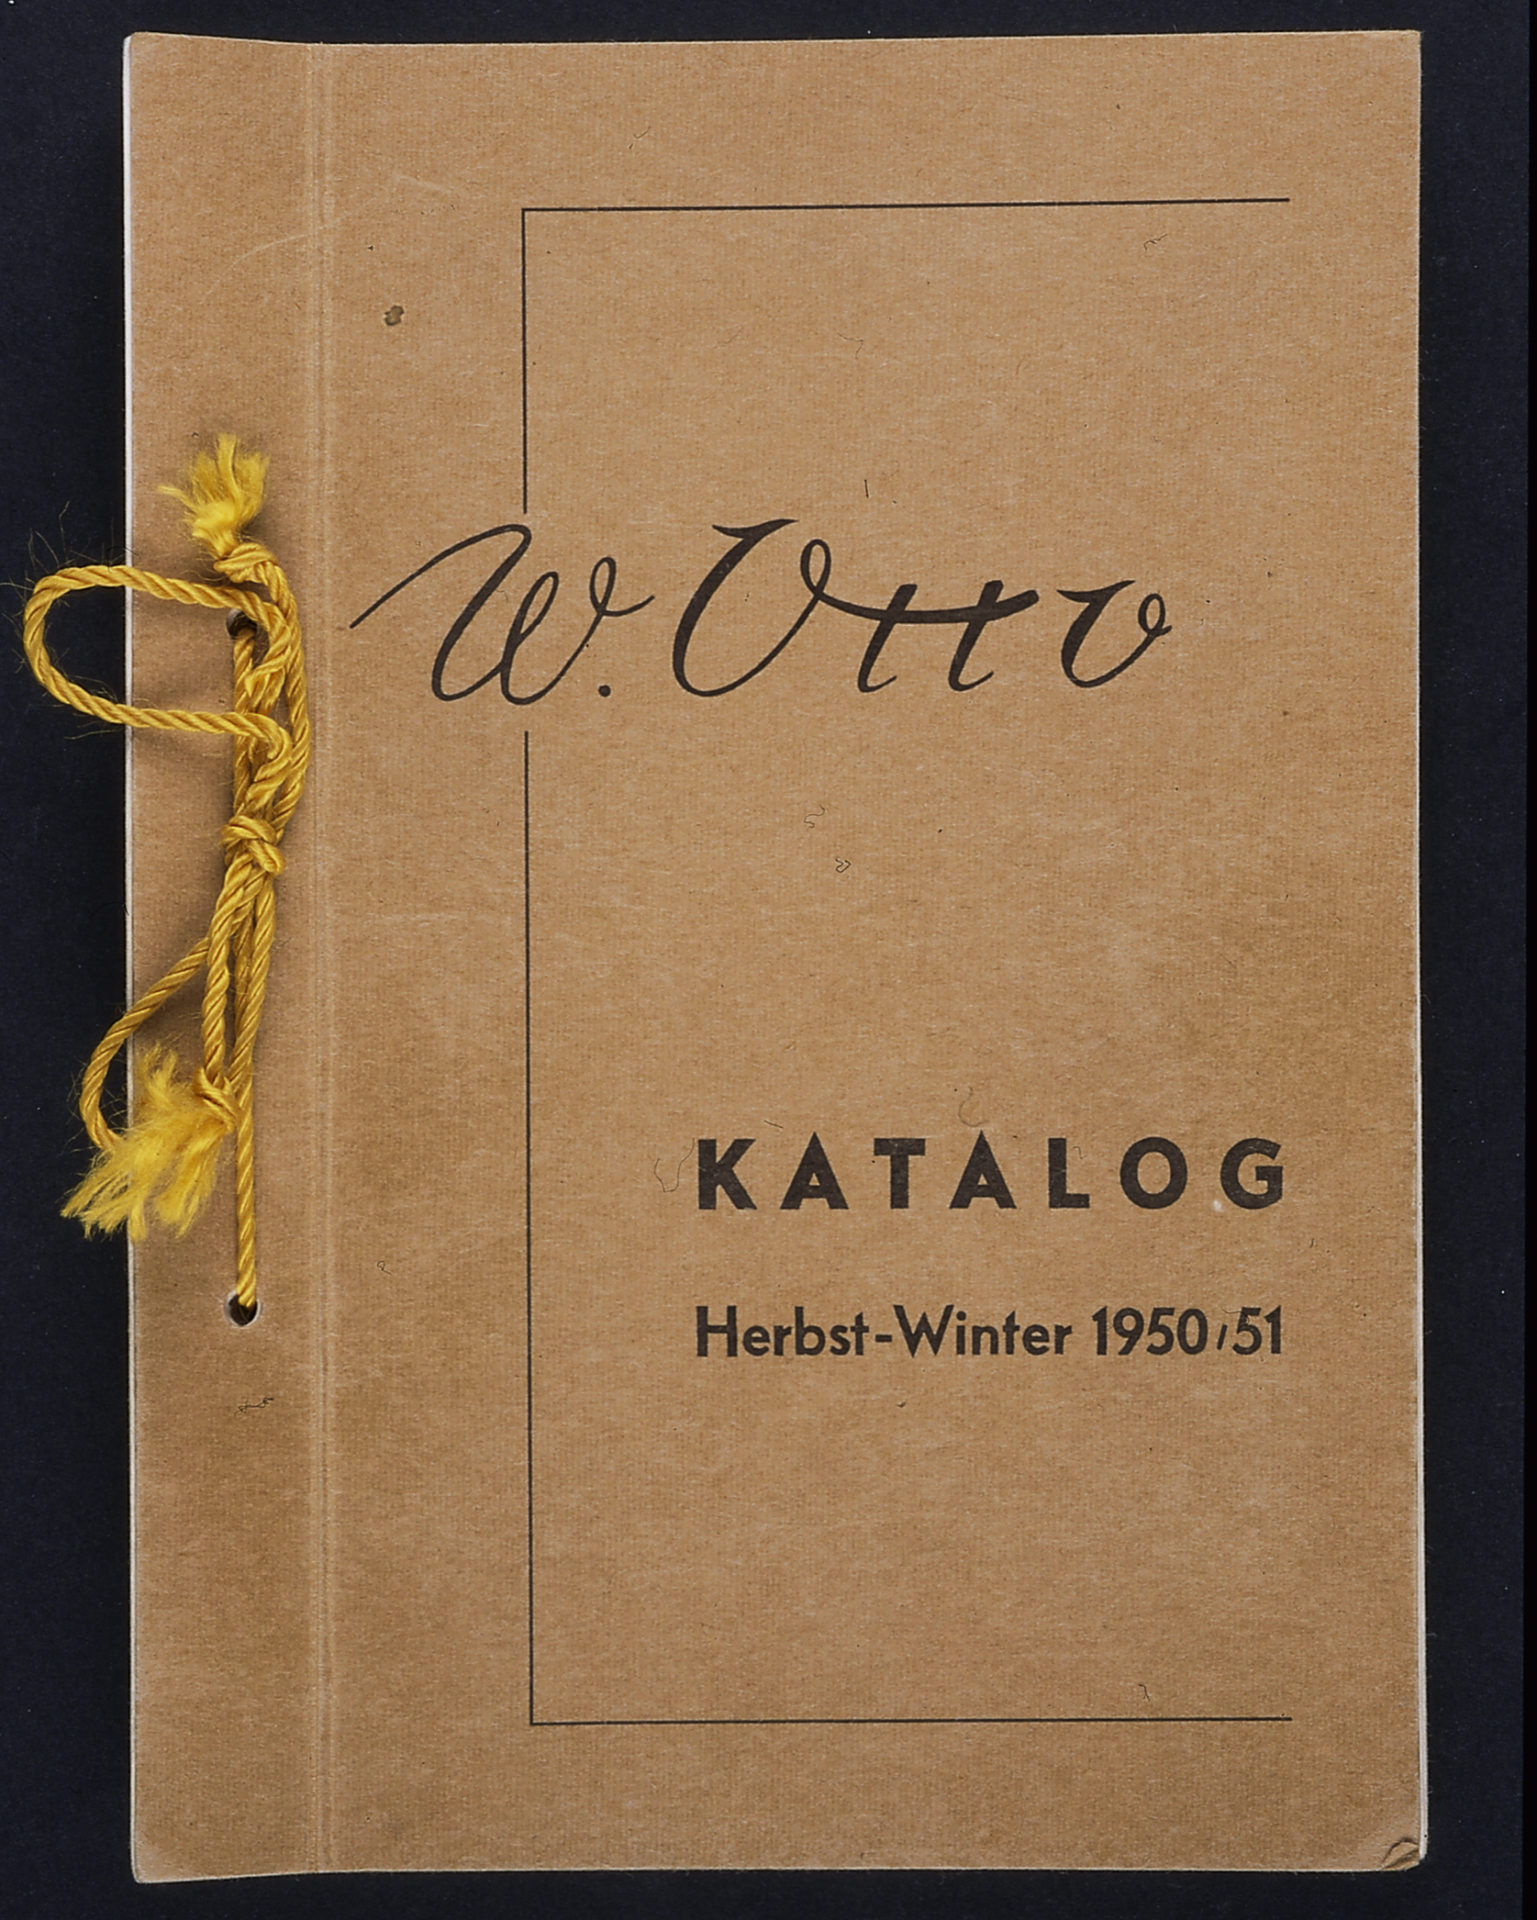 Aantrekkelijk zijn aantrekkelijk uitslag Artefact Otto drukt laatste catalogus | Twinkle